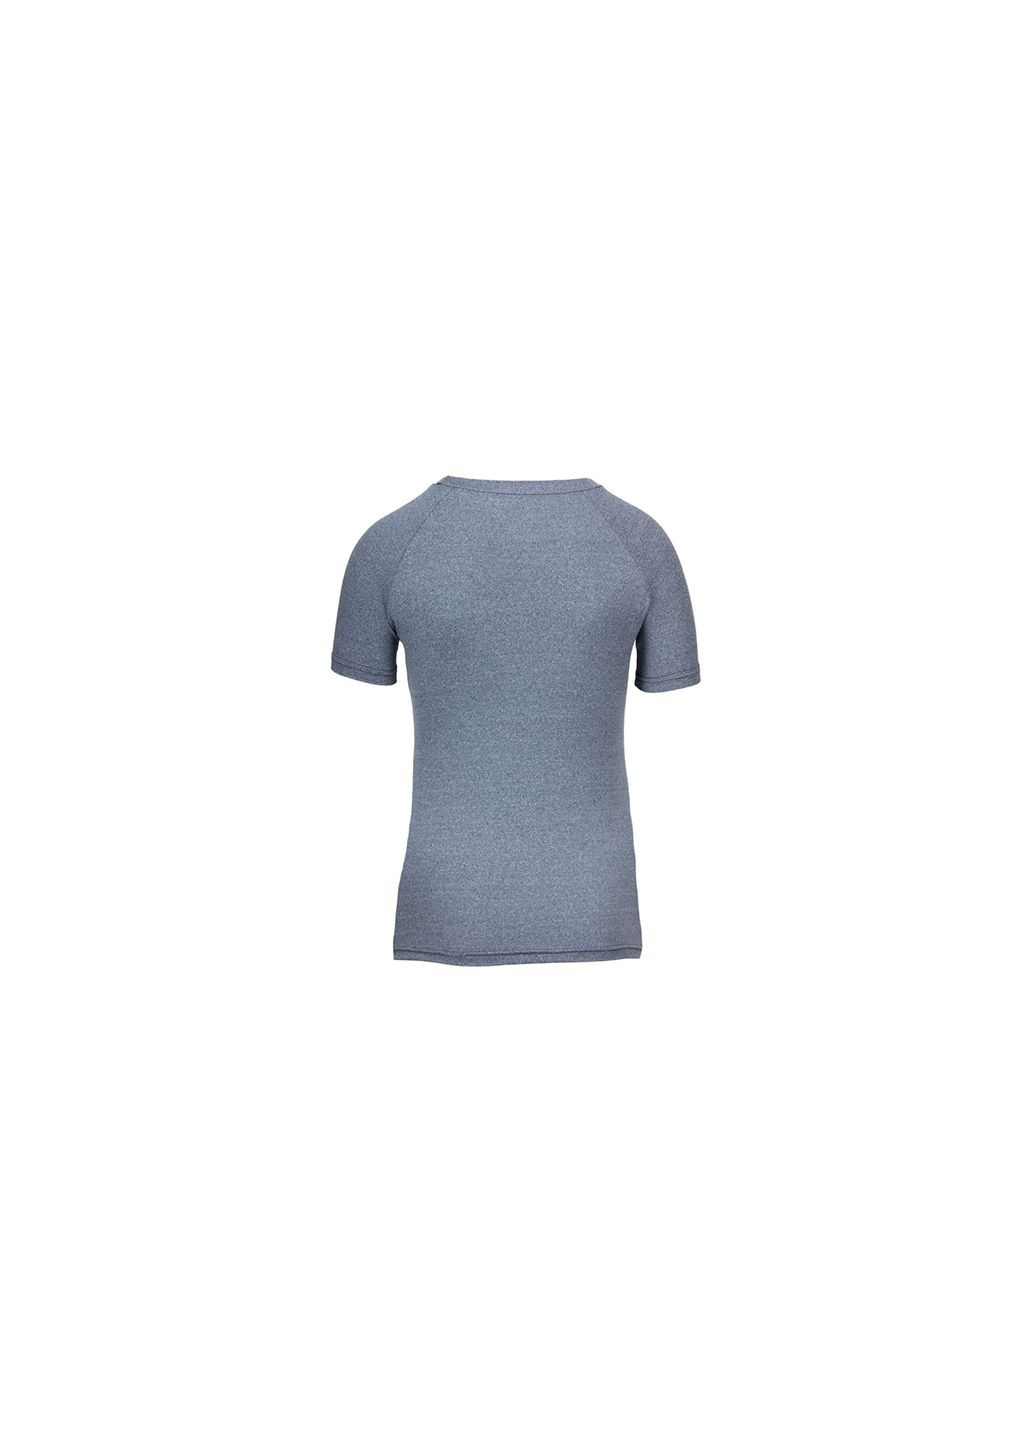 Комбинированная всесезон футболка женская aspen голубой (06369226) Gorilla Wear